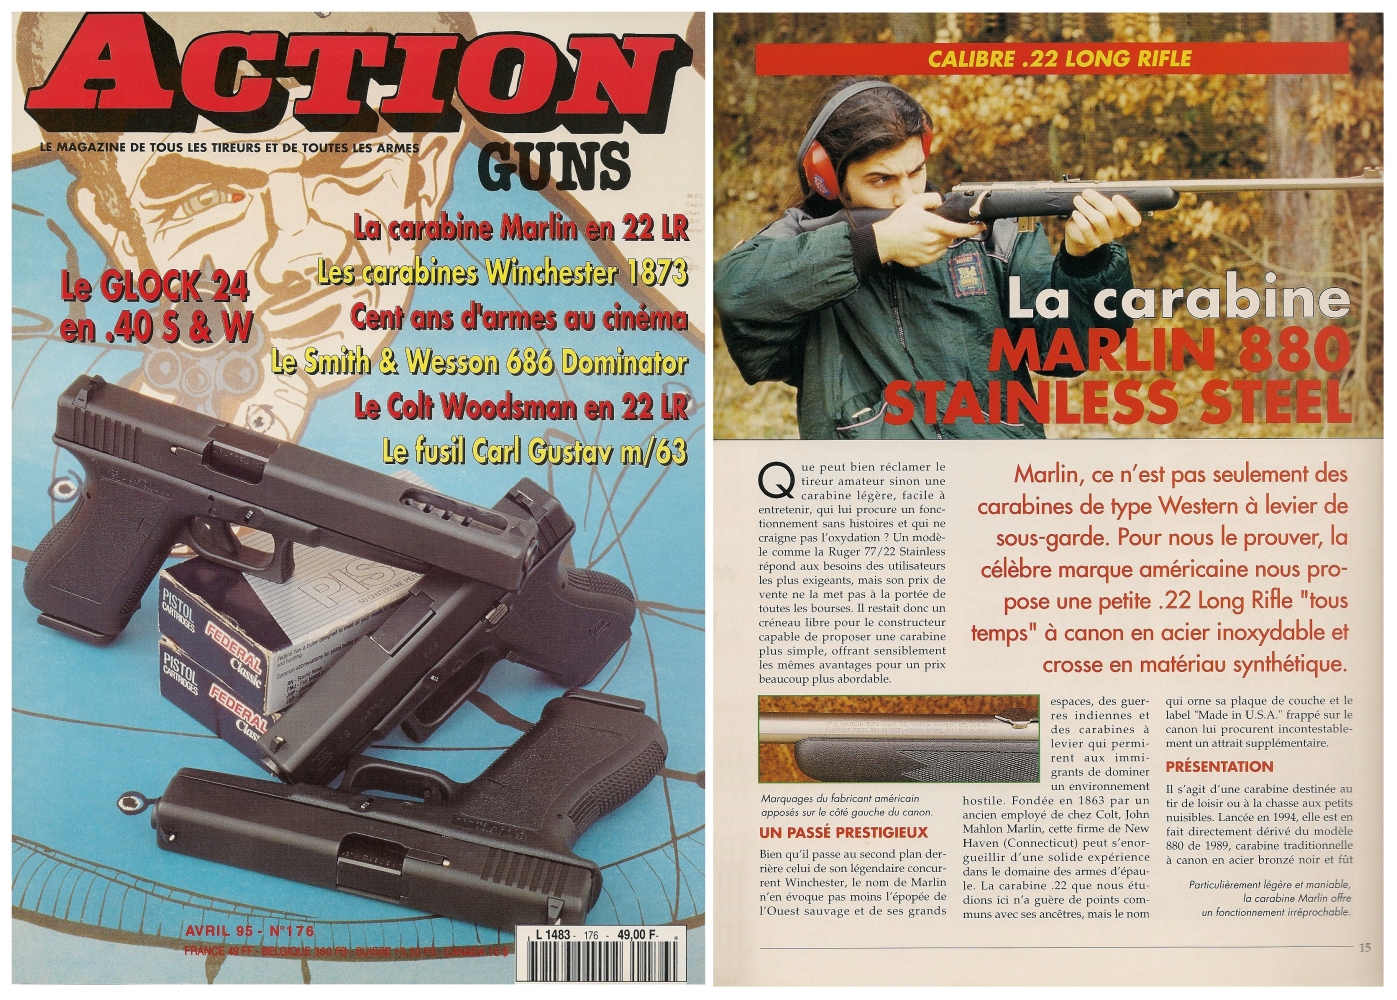 Le banc d'essai de la carabine Marlin 880 SS a été publié sur 5 pages dans le magazine Action Guns n° 176 (avril 1995). 